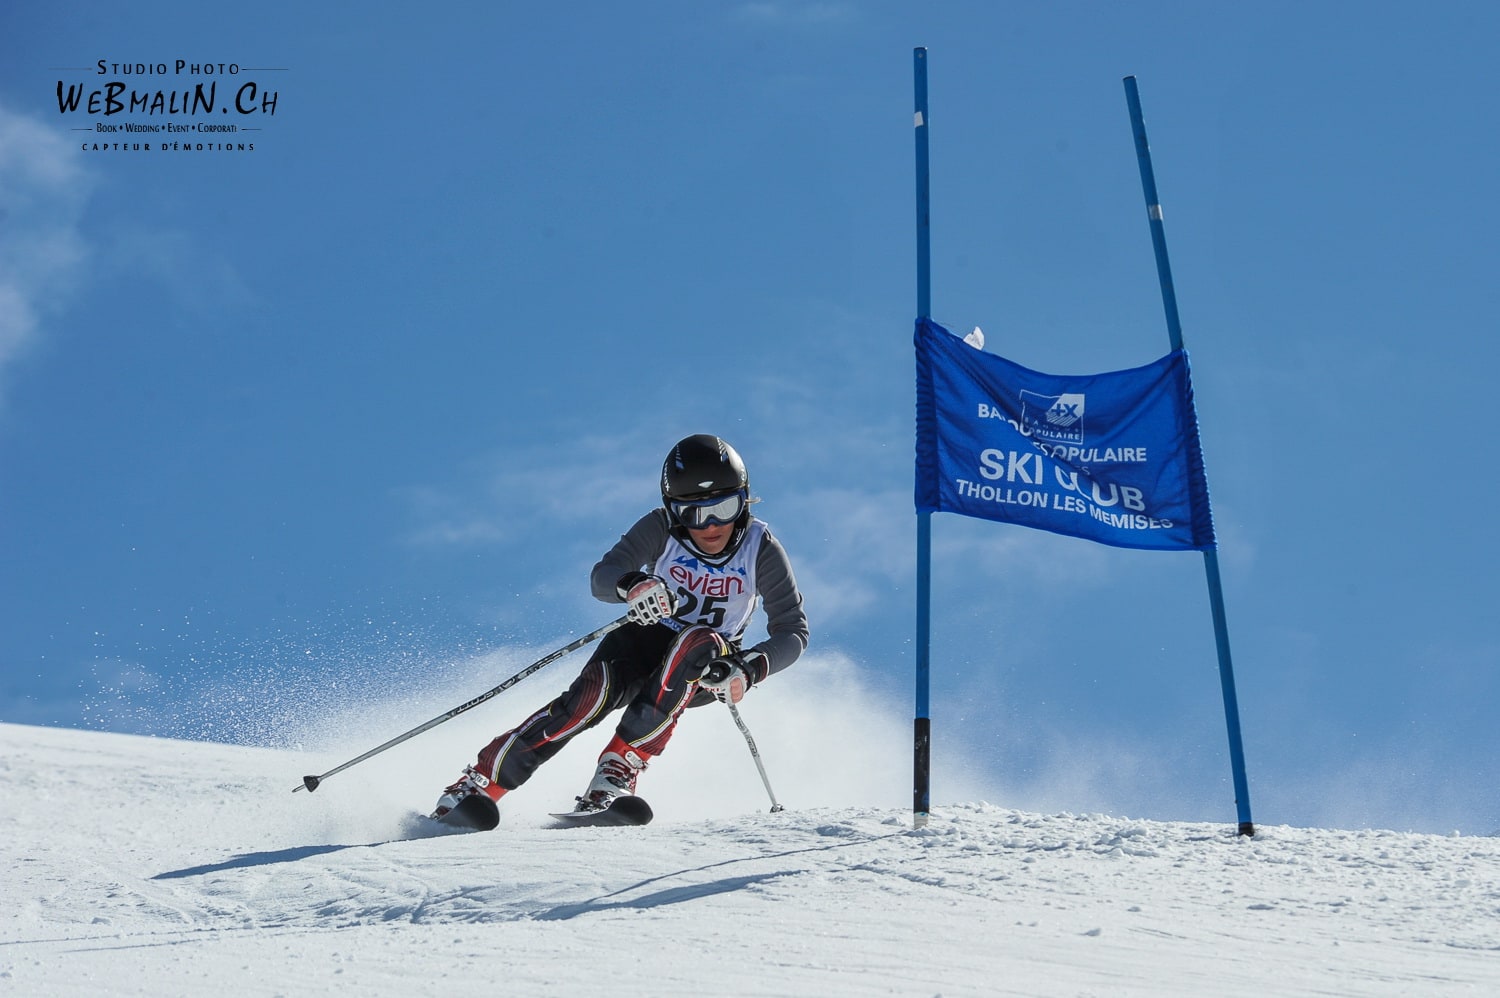 Competition Ski Club Thollon Les Memises - 1393-1